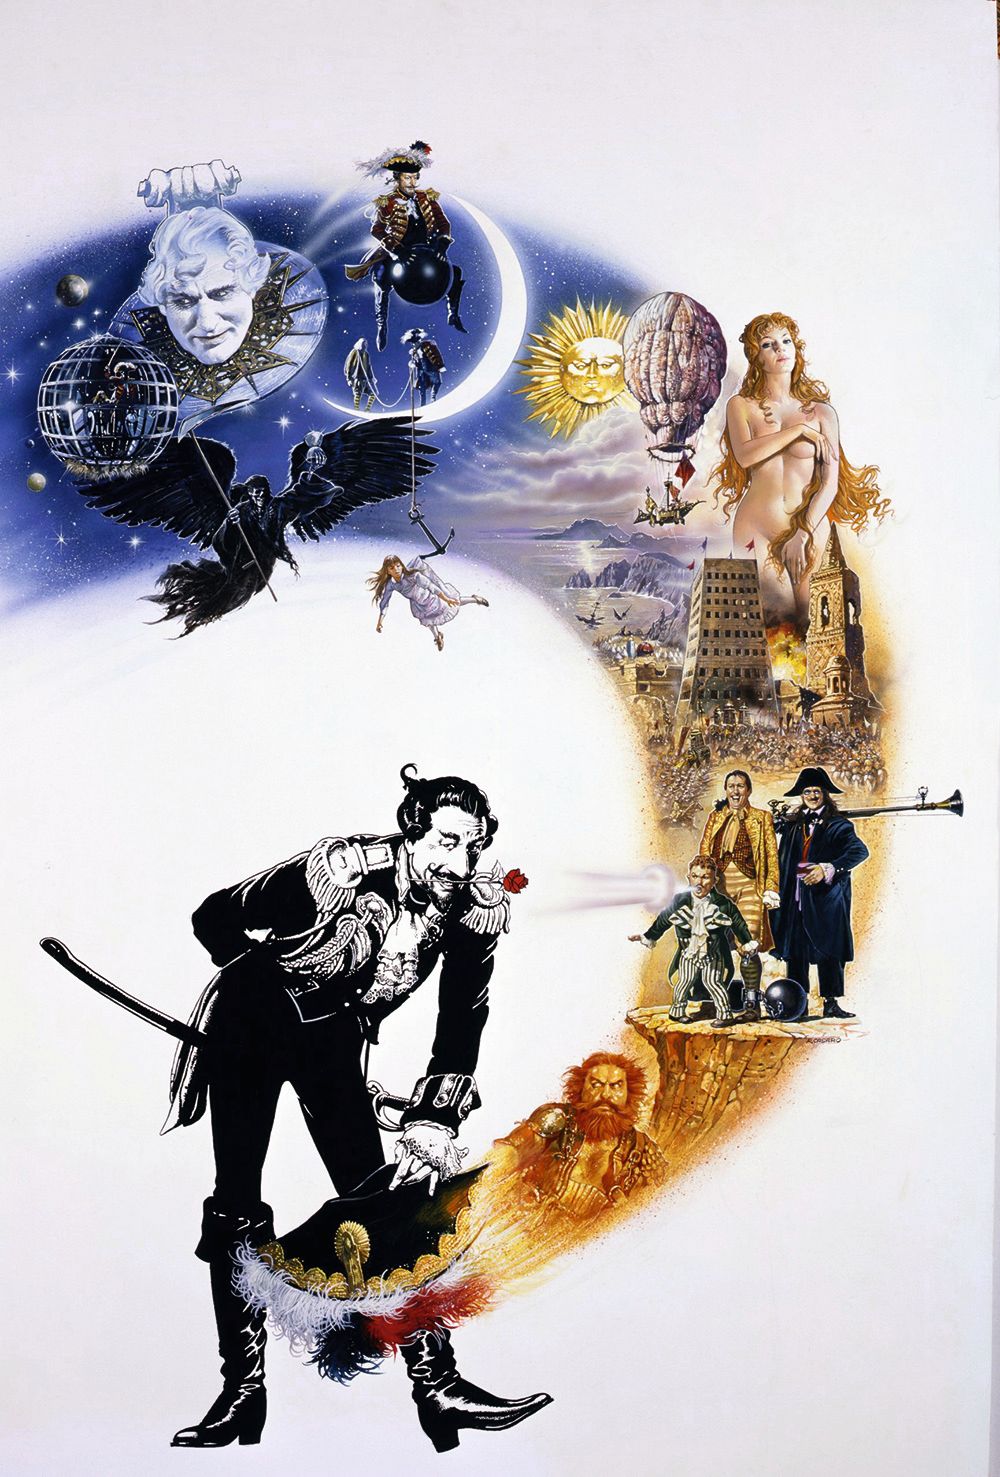 Renato Casaros Plakat für die Abenteuer von Baron Münchhausen kombinierte Szenen aus dem Film